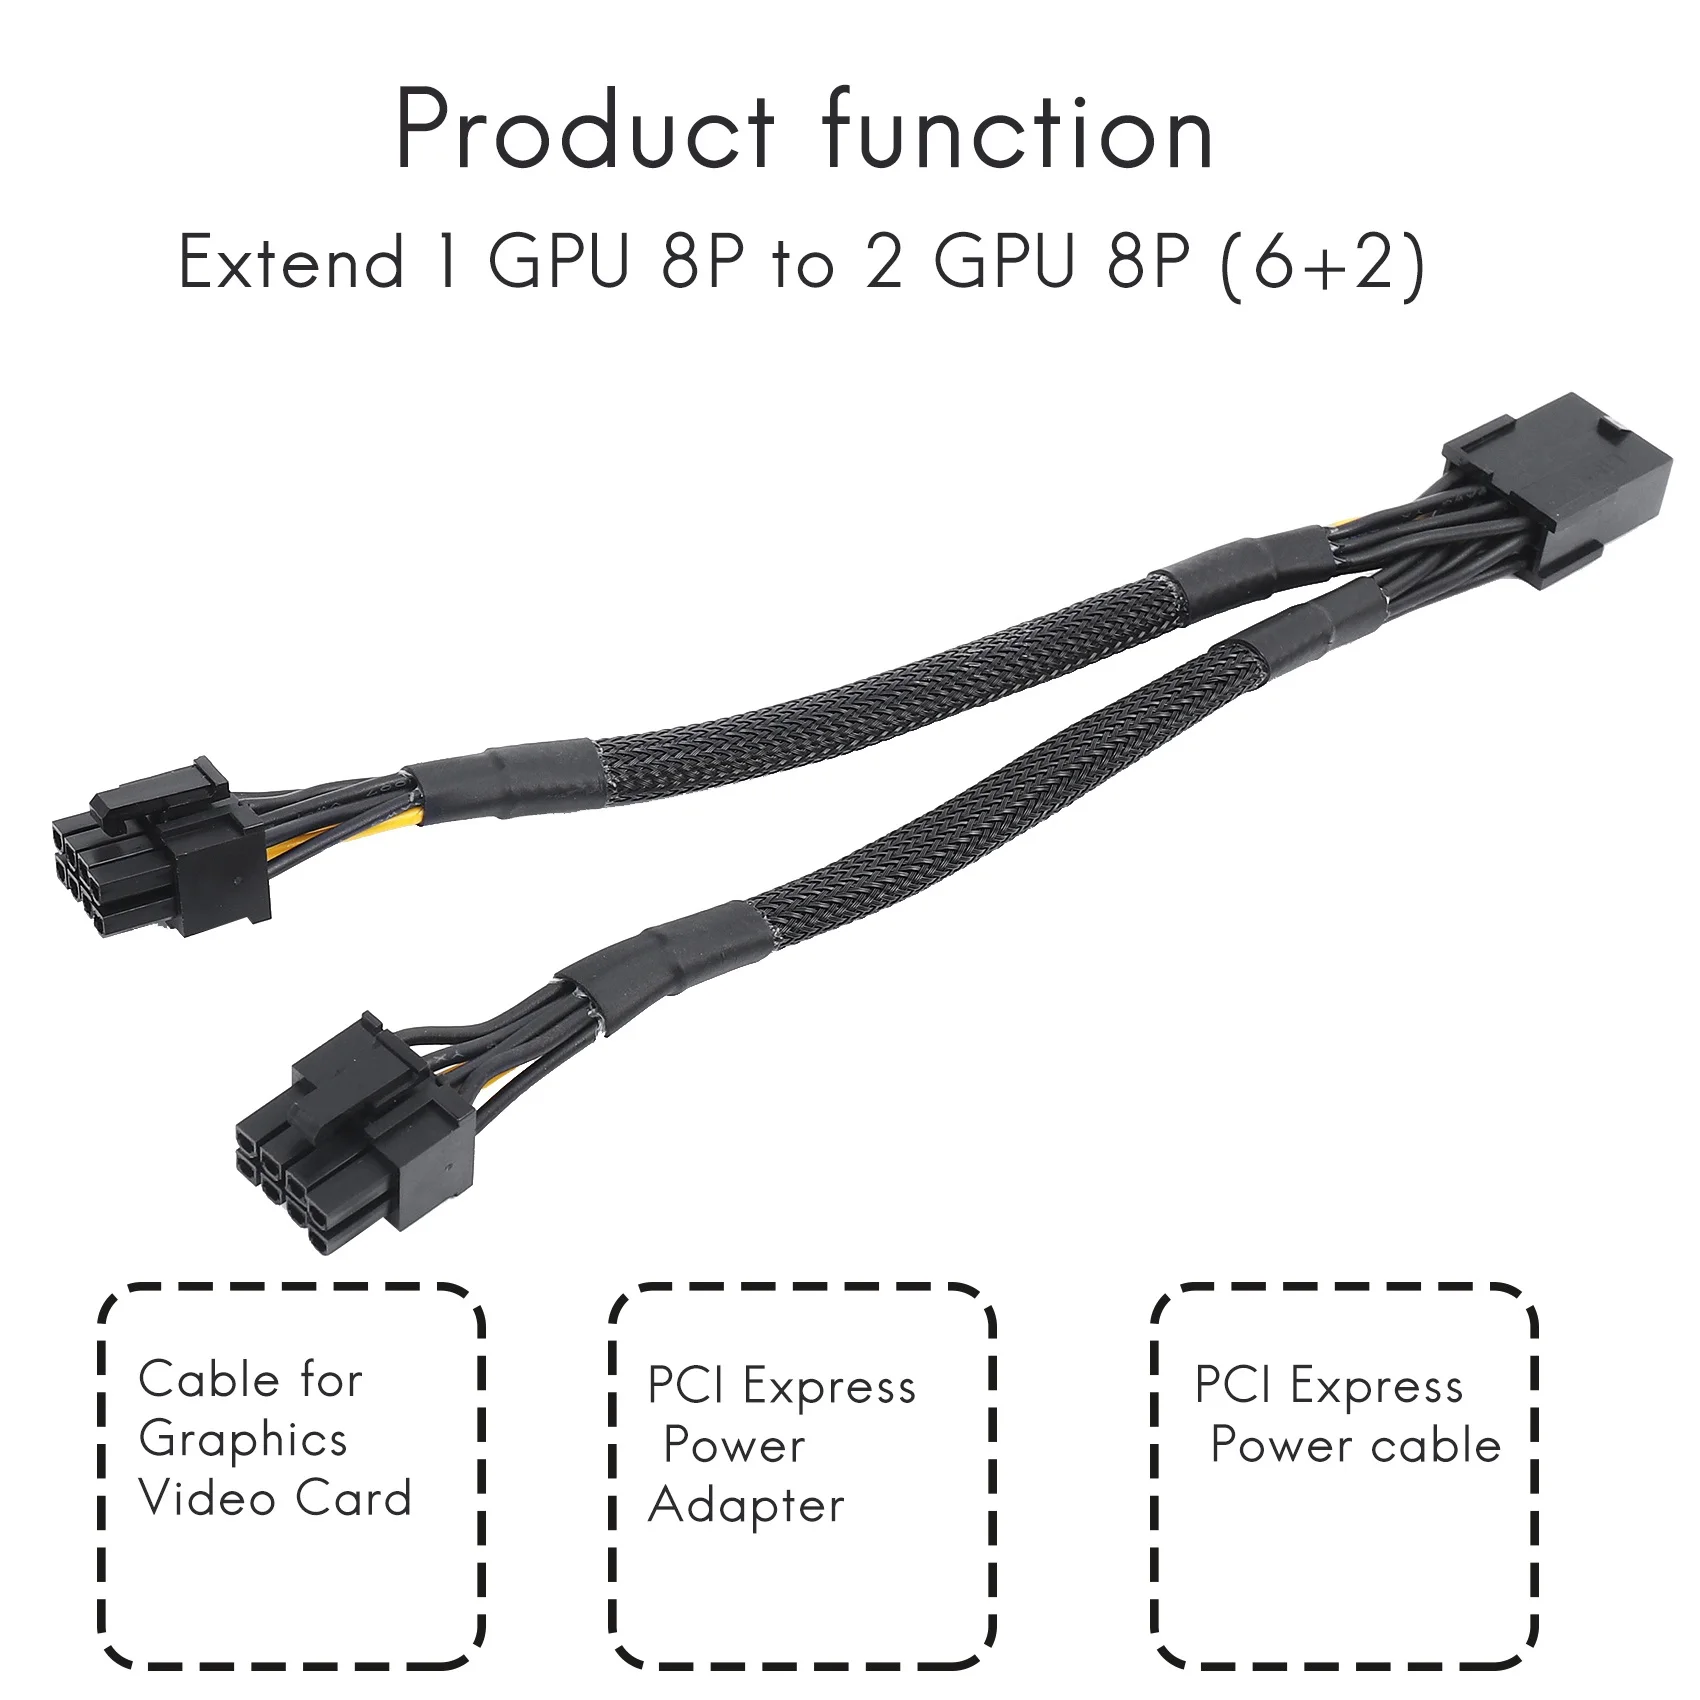 1ШТ 8-контактный разъем GPU PCIe для двойного 2X 8-контактного (6 + 2) разъема Адаптера питания PCI Express с оплеткой Y-образного удлинителя, 20 см